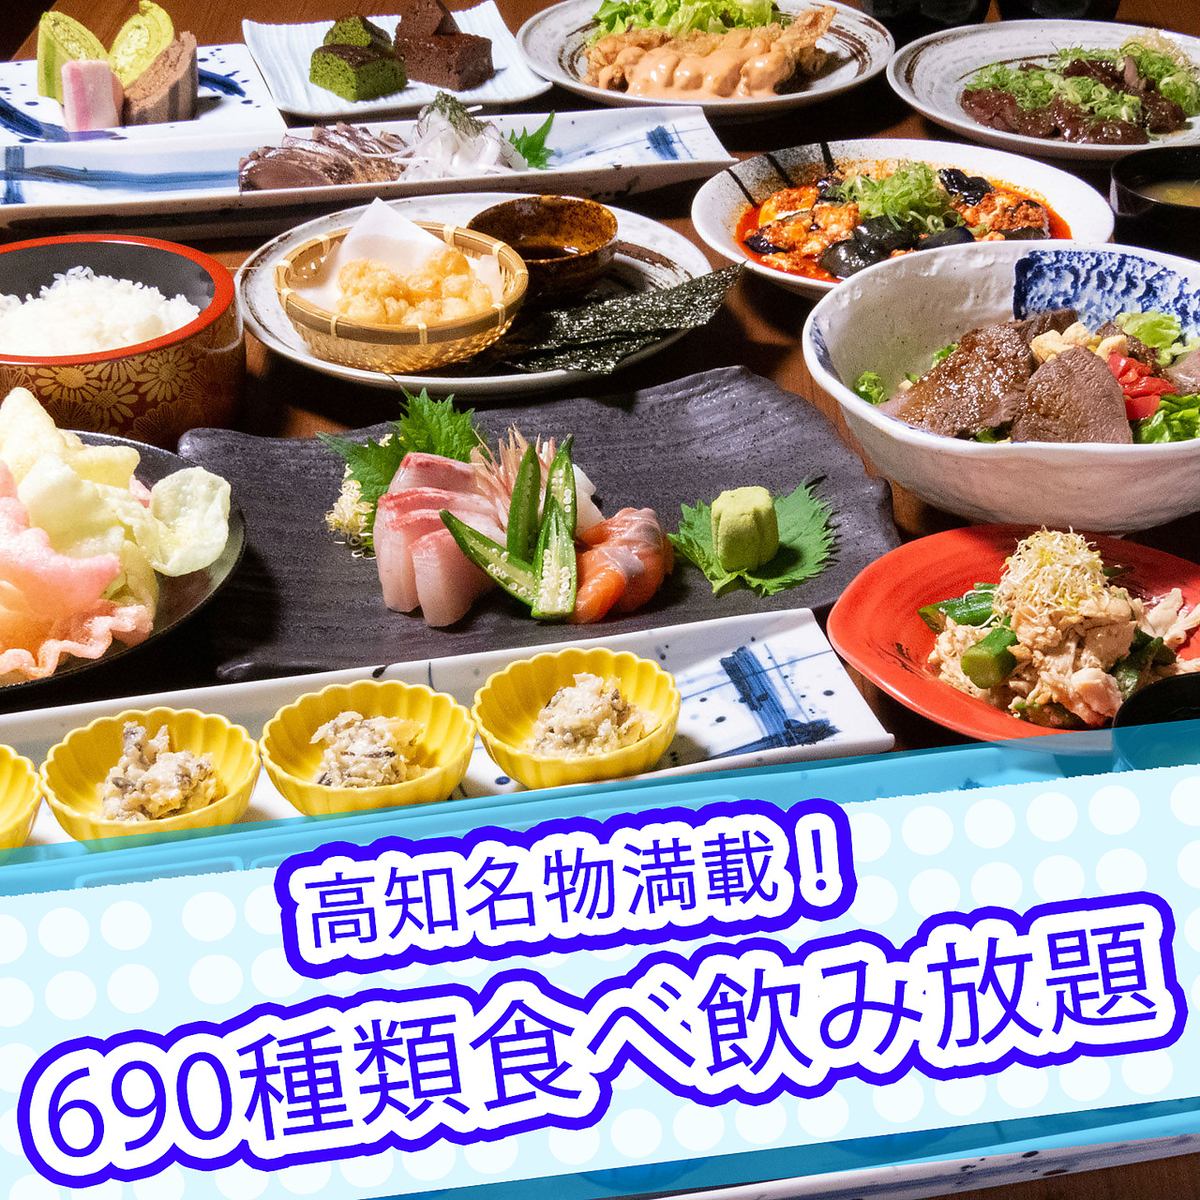 约690种3小时自助餐4,000日元起♪超值优惠券可用